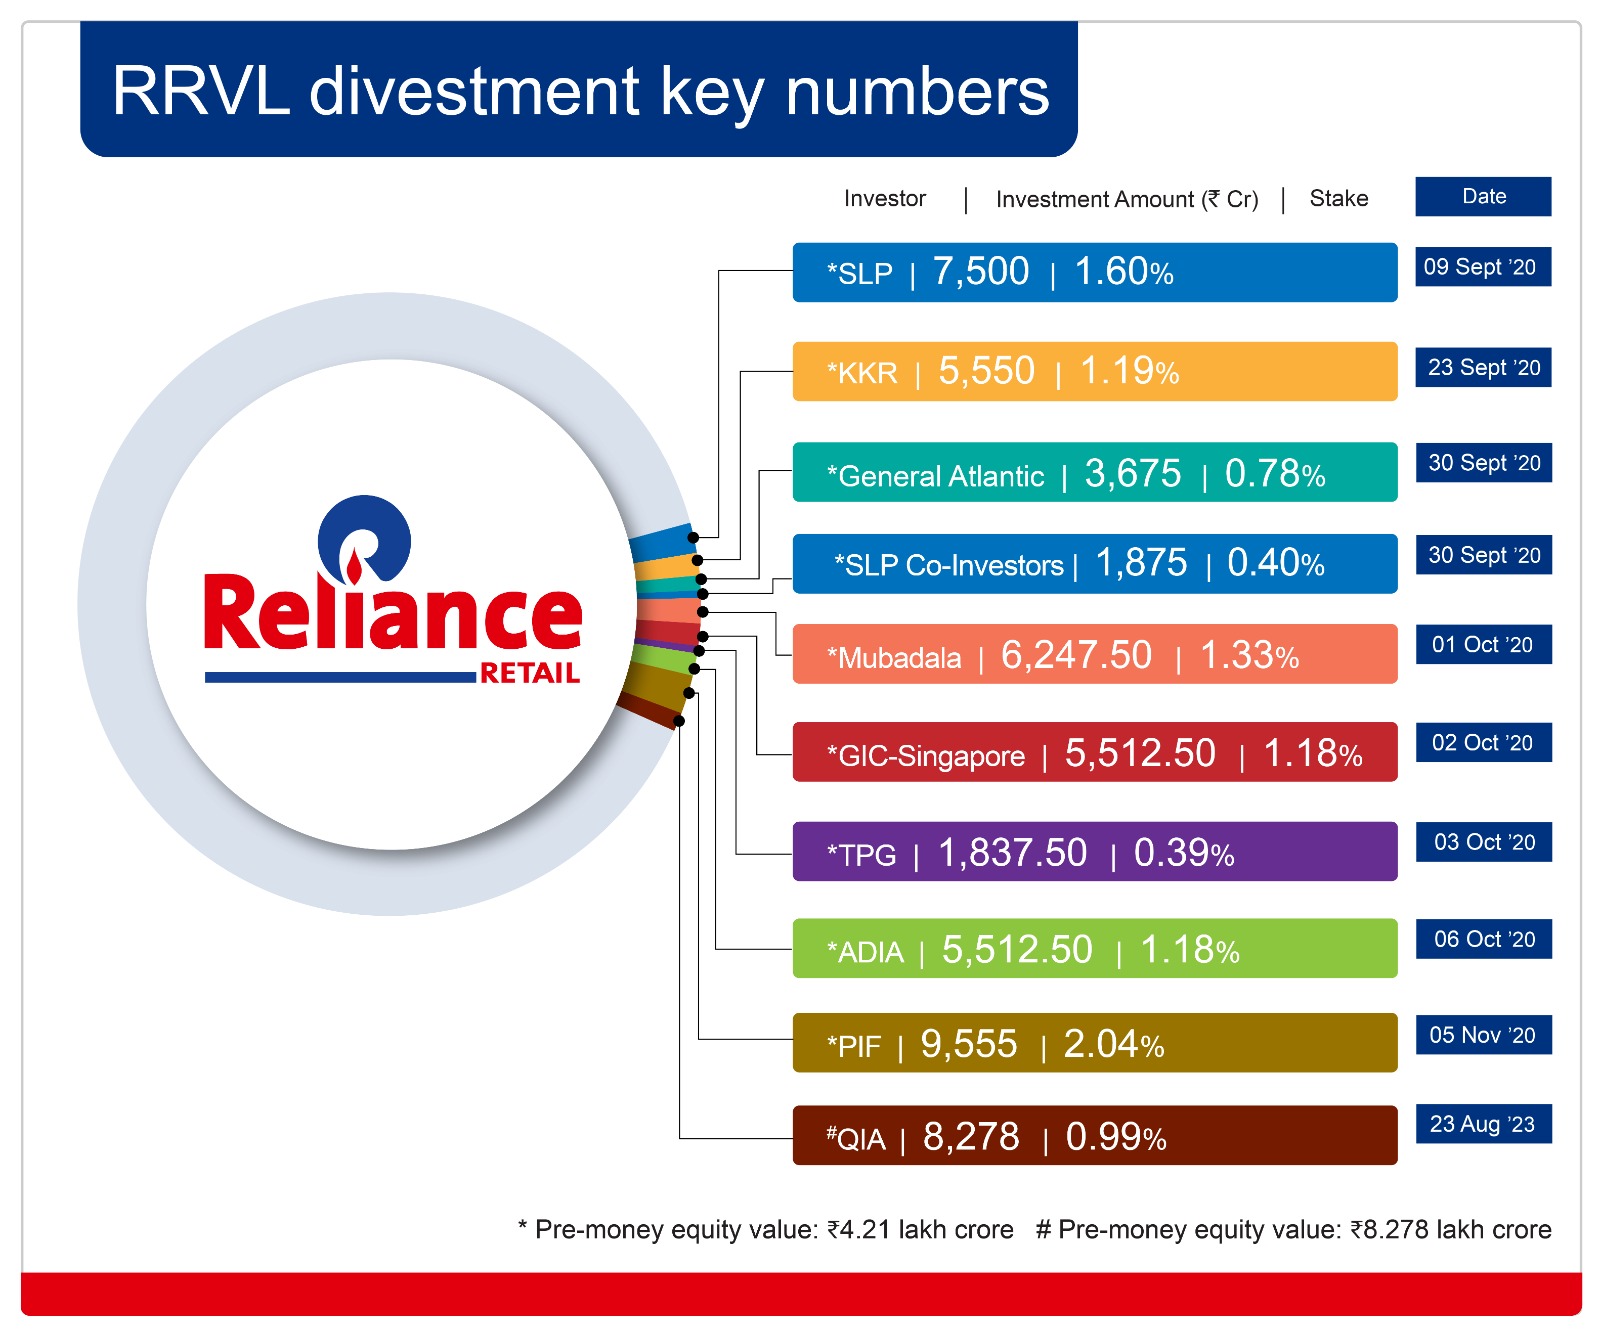 रिलायंस रिटेल वेंचर्स लिमिटेड में 0.99% के लिए ₹8,278 करोड़ का निवेश करेगी कतर इन्वेस्टमेंटअथॉरिटी(QIA)